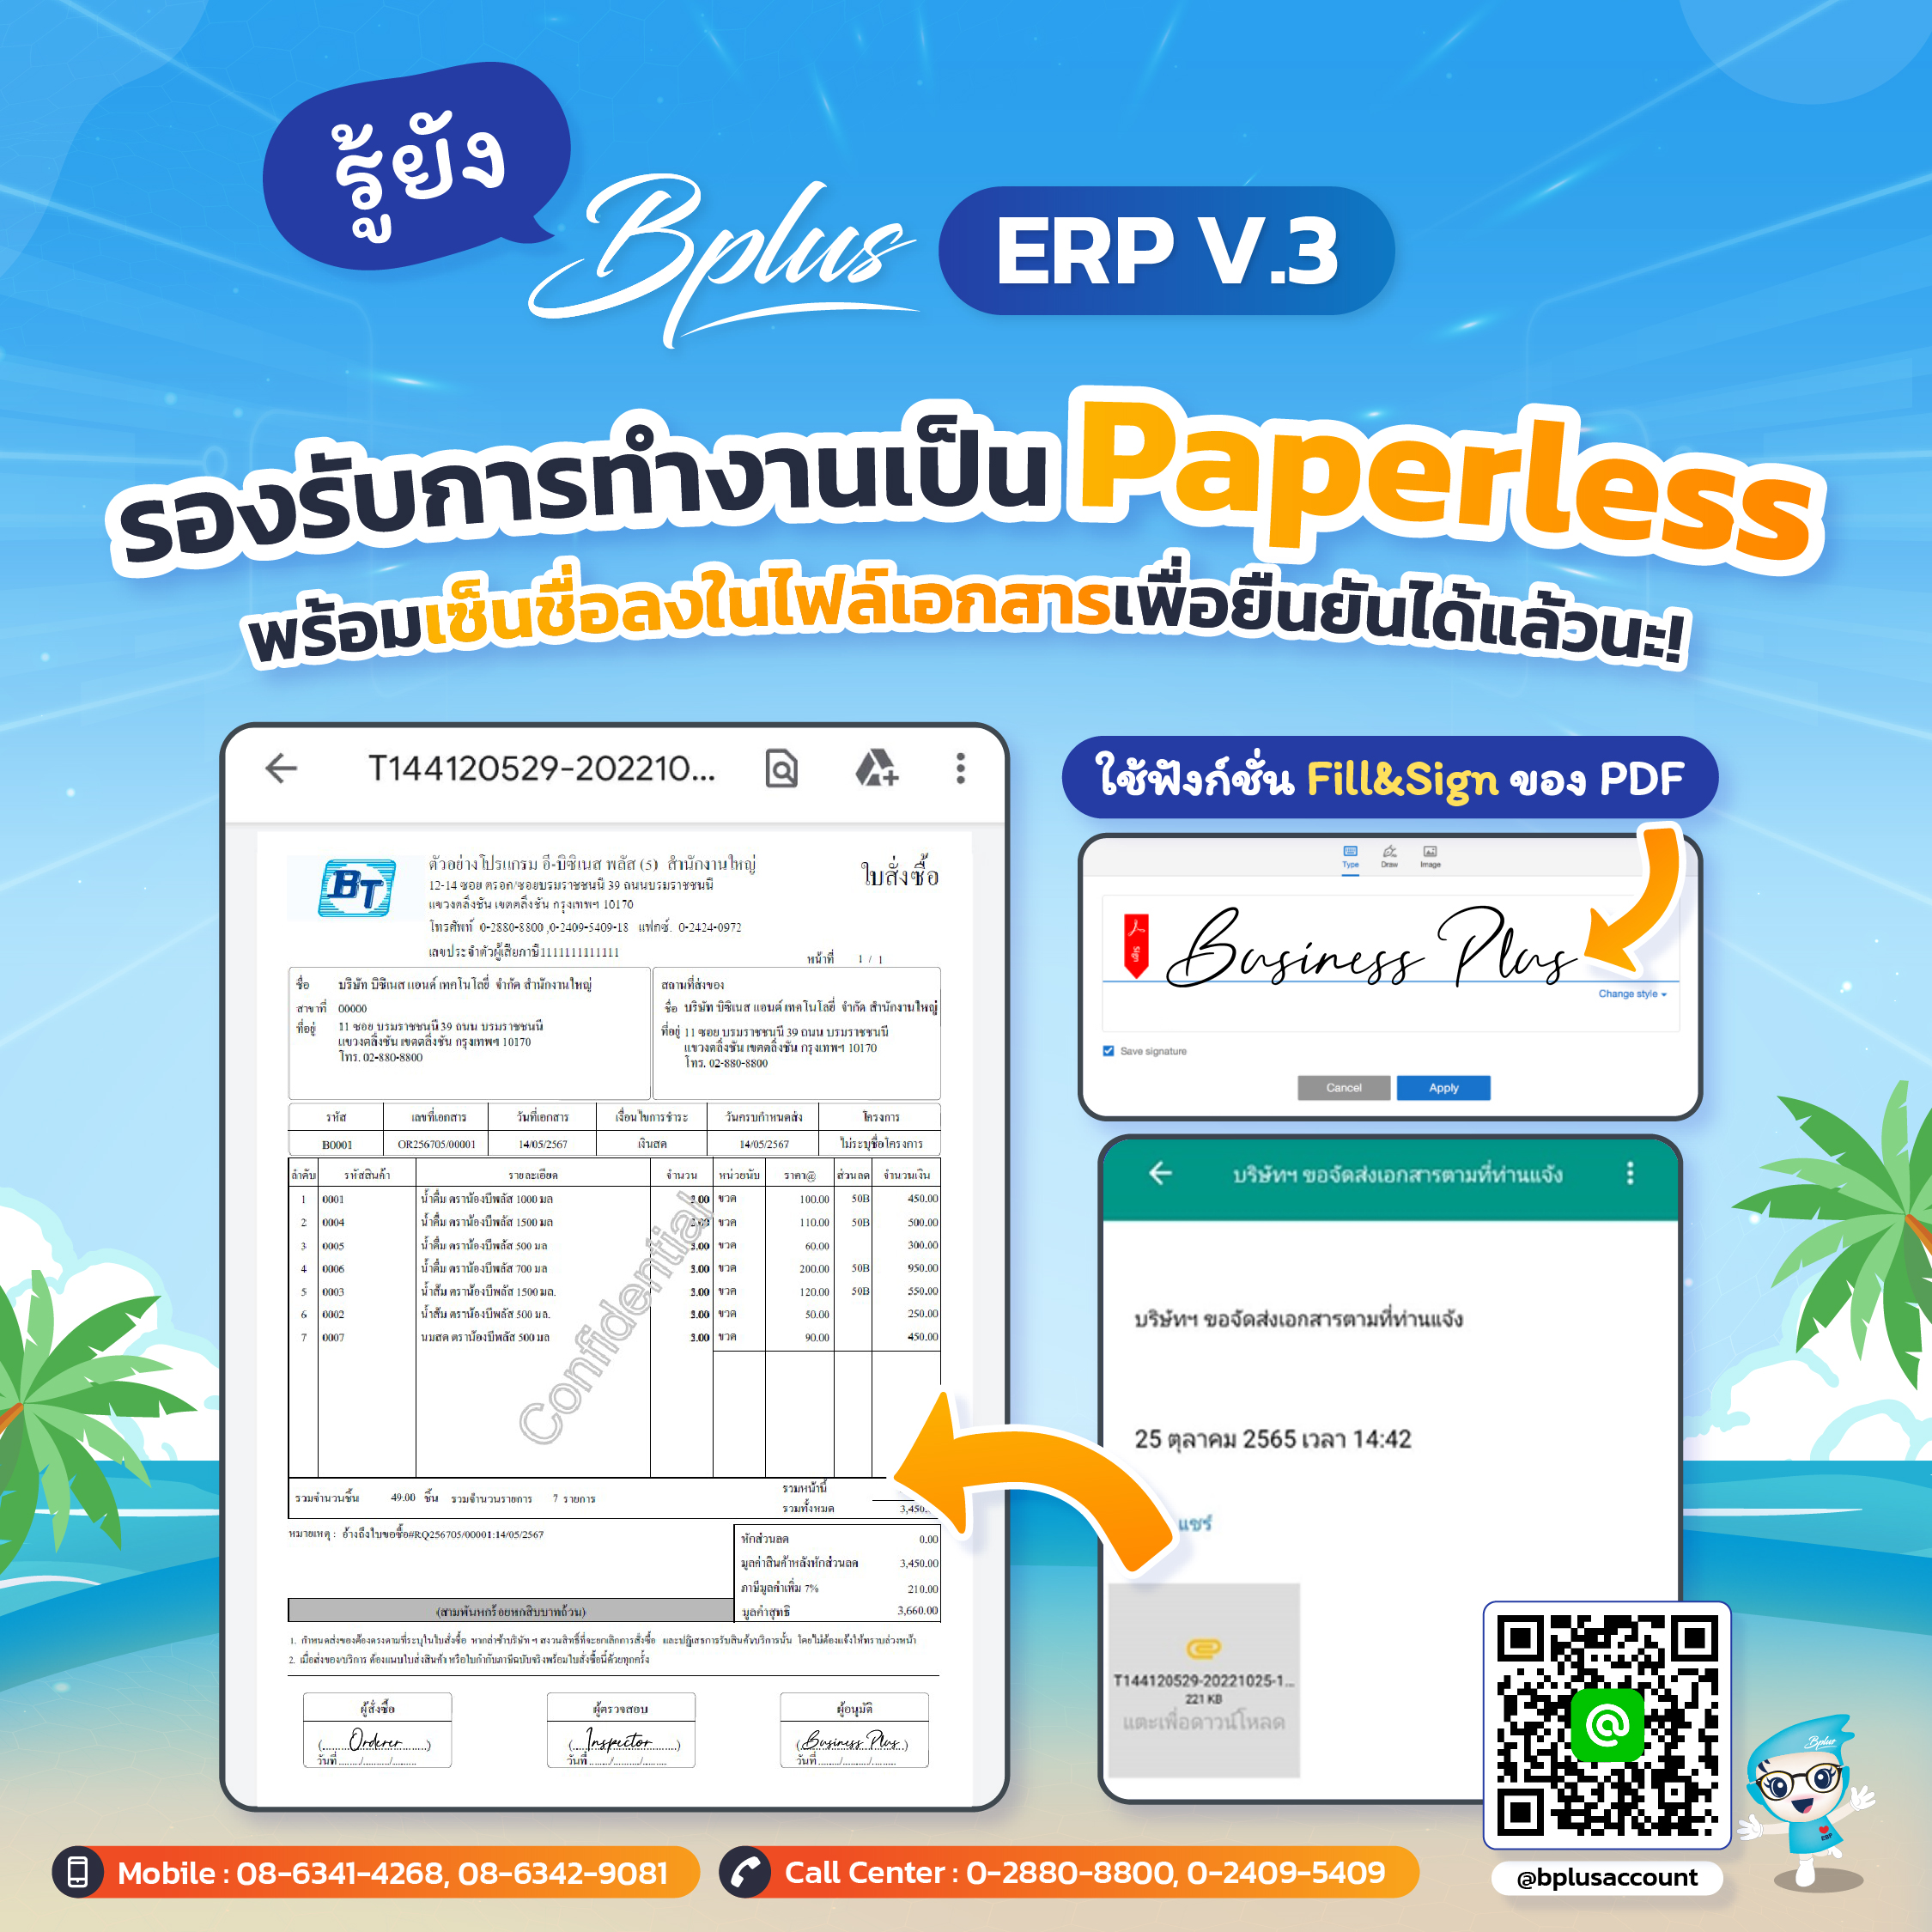 Bplus ERP V.3 รองรับการทำงานเป็น Paperless